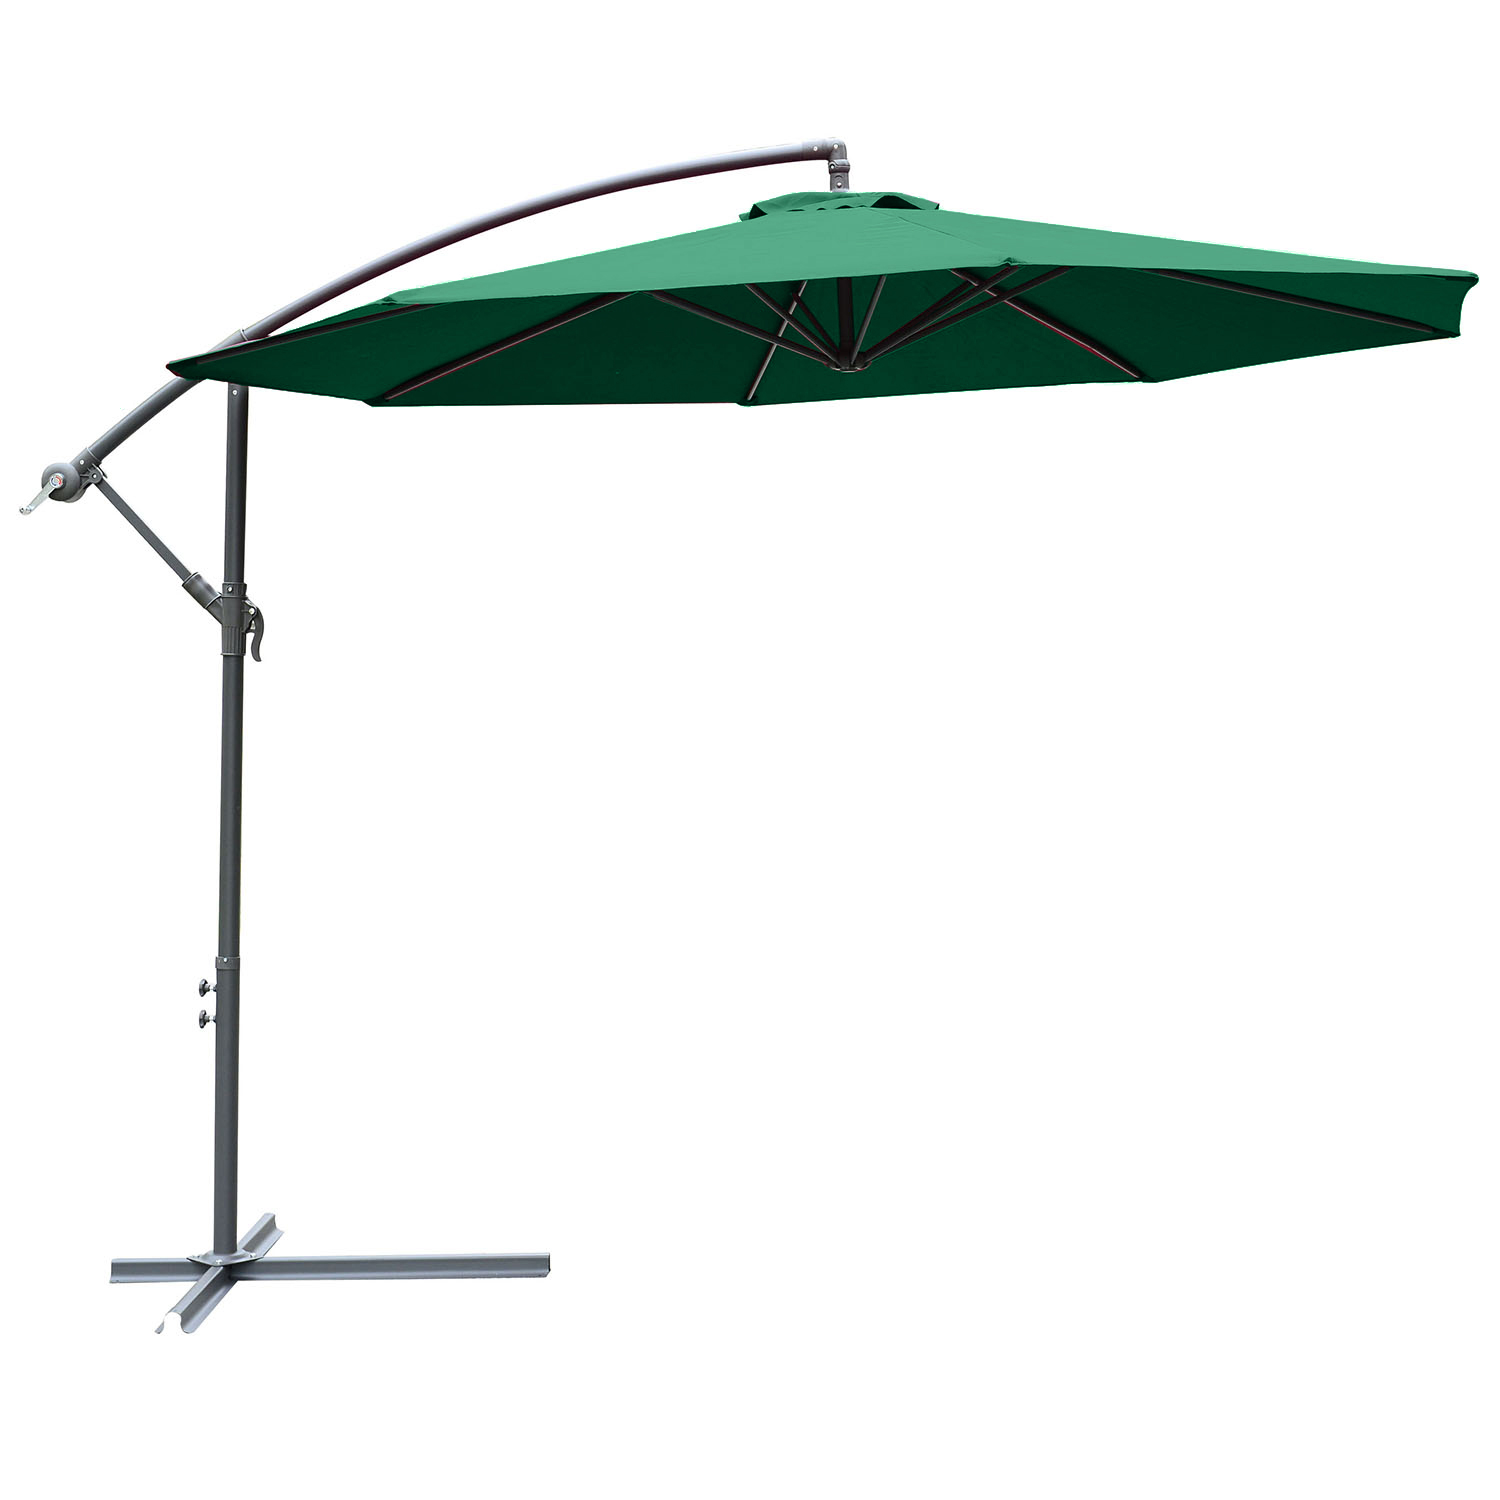 Outsunny 3(m) Garden Banana Parasol Hanging Cantilever Umbrella with Crank Handle and Cross Base for Outdoor, Sun Shade, Green